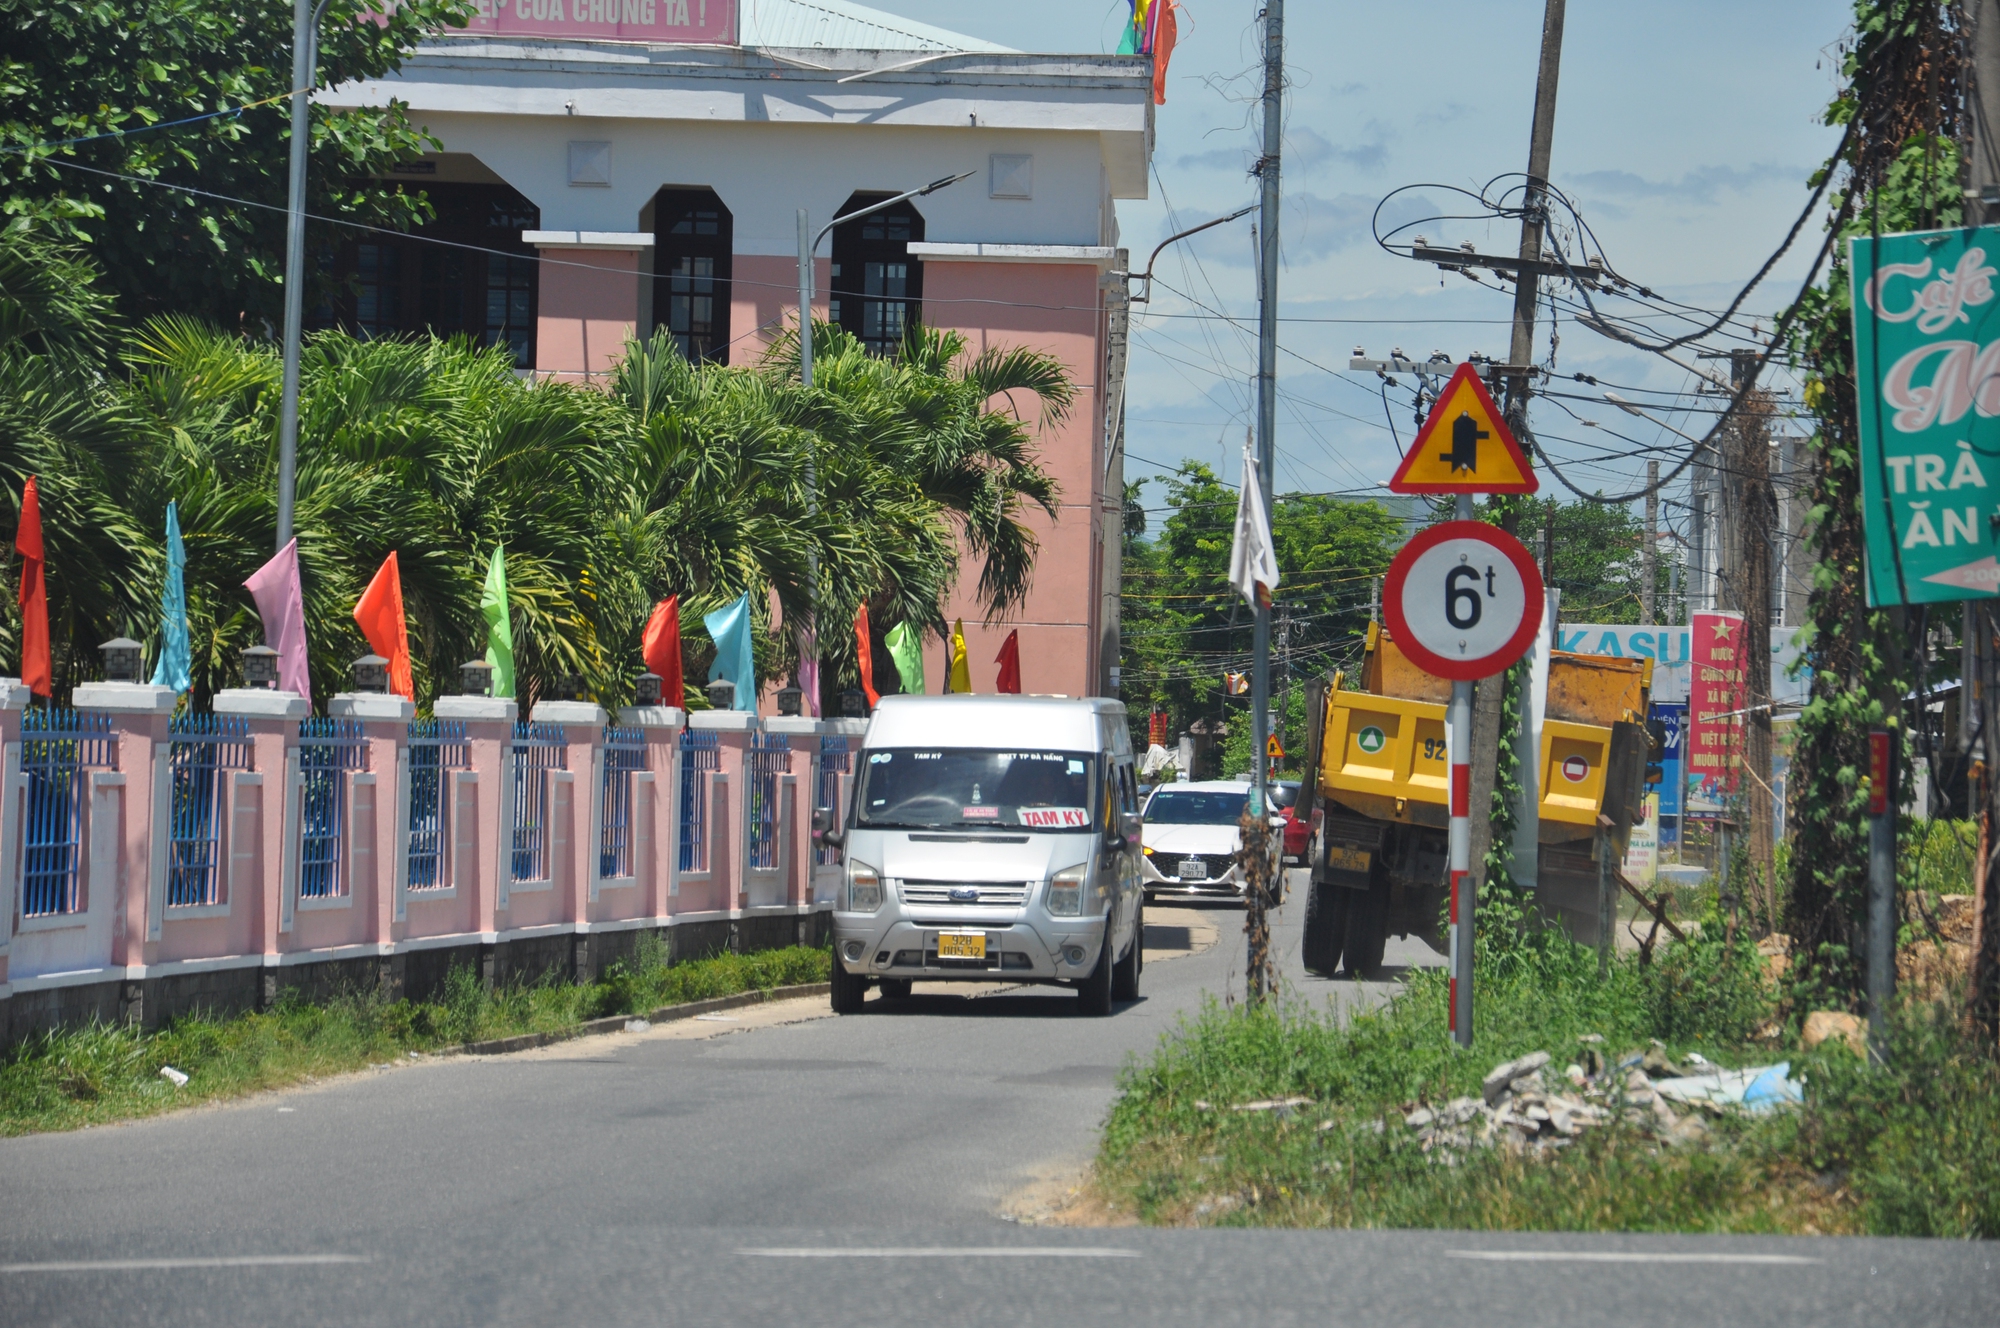 Bất chấp đường cấm, ôtô nối đuôi né trạm thu phí, bức tử đường dân sinh ở Quảng Nam- Ảnh 12.